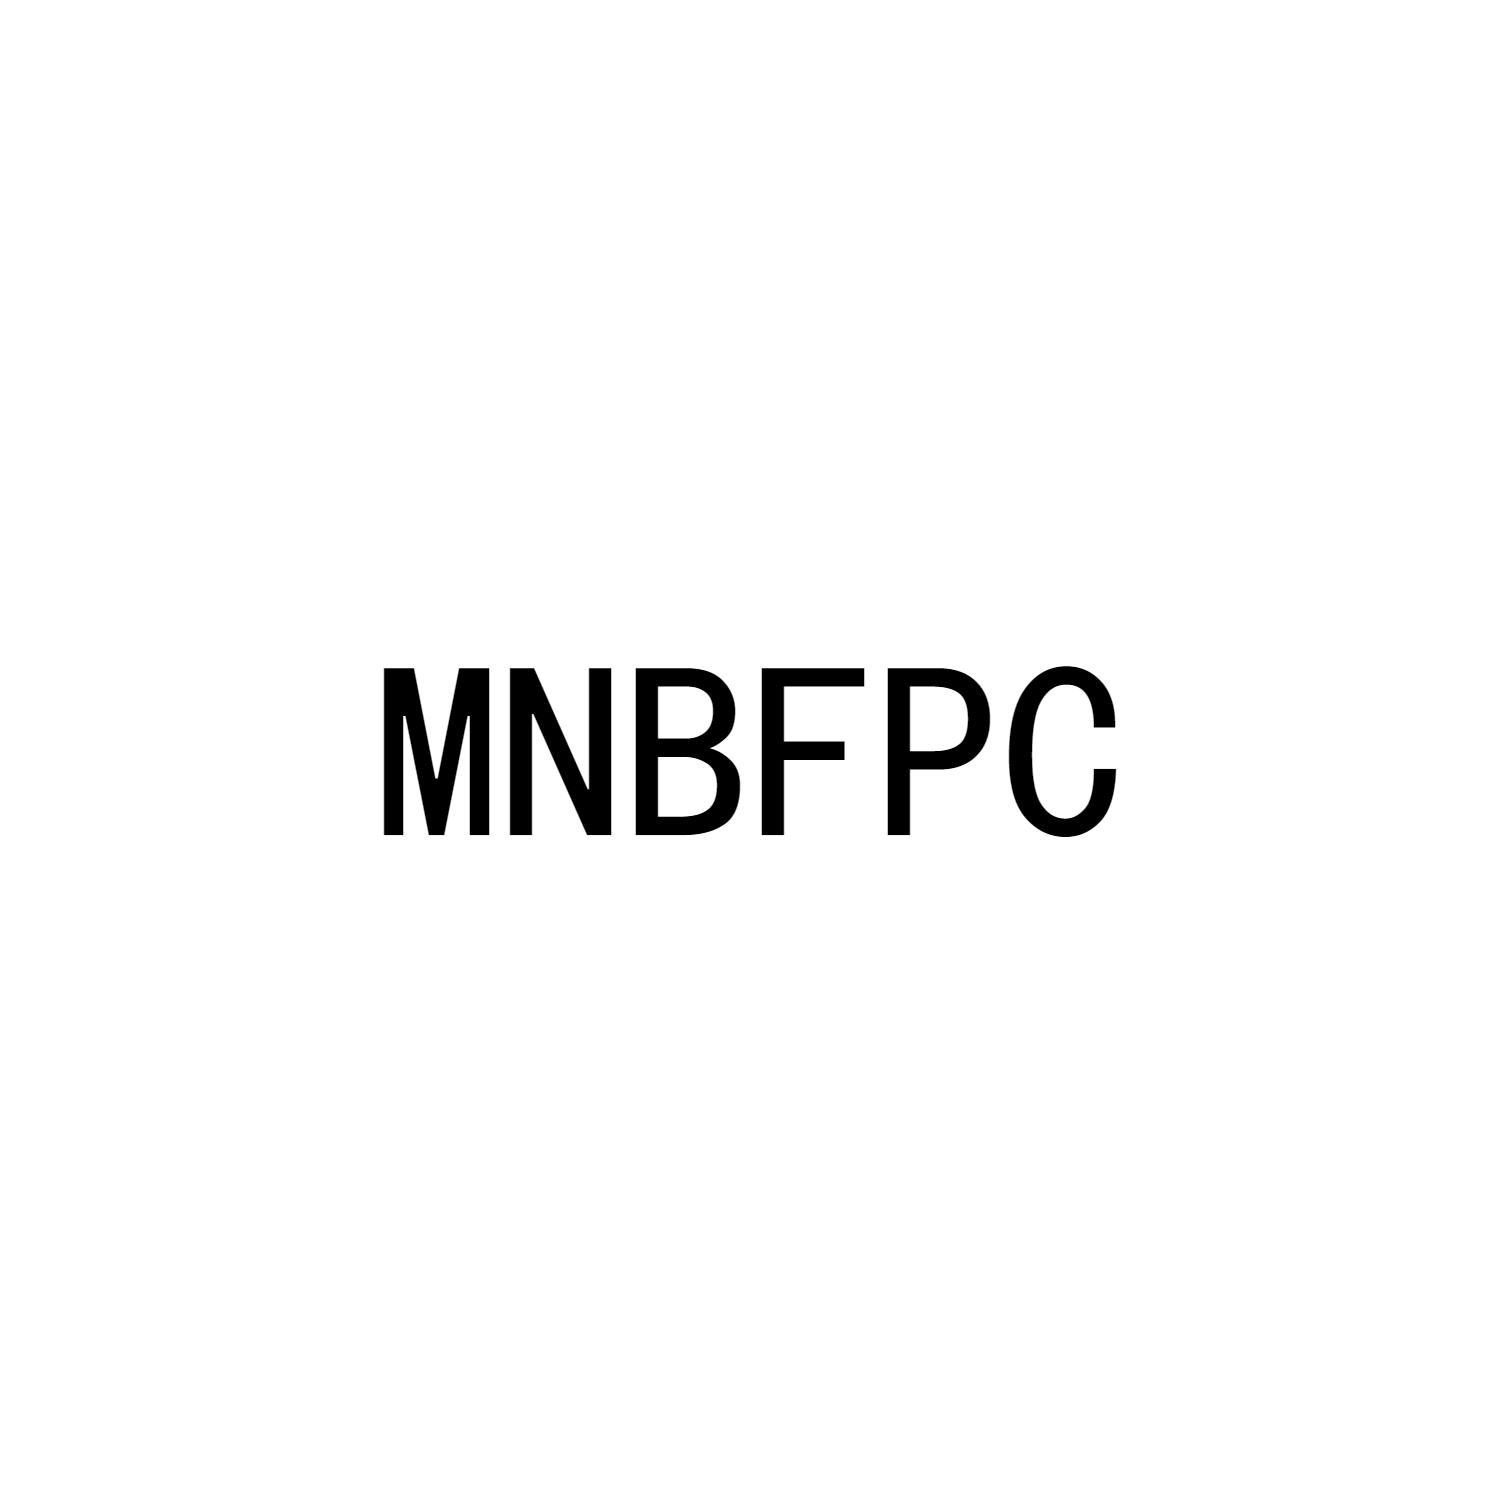 MNBFPC